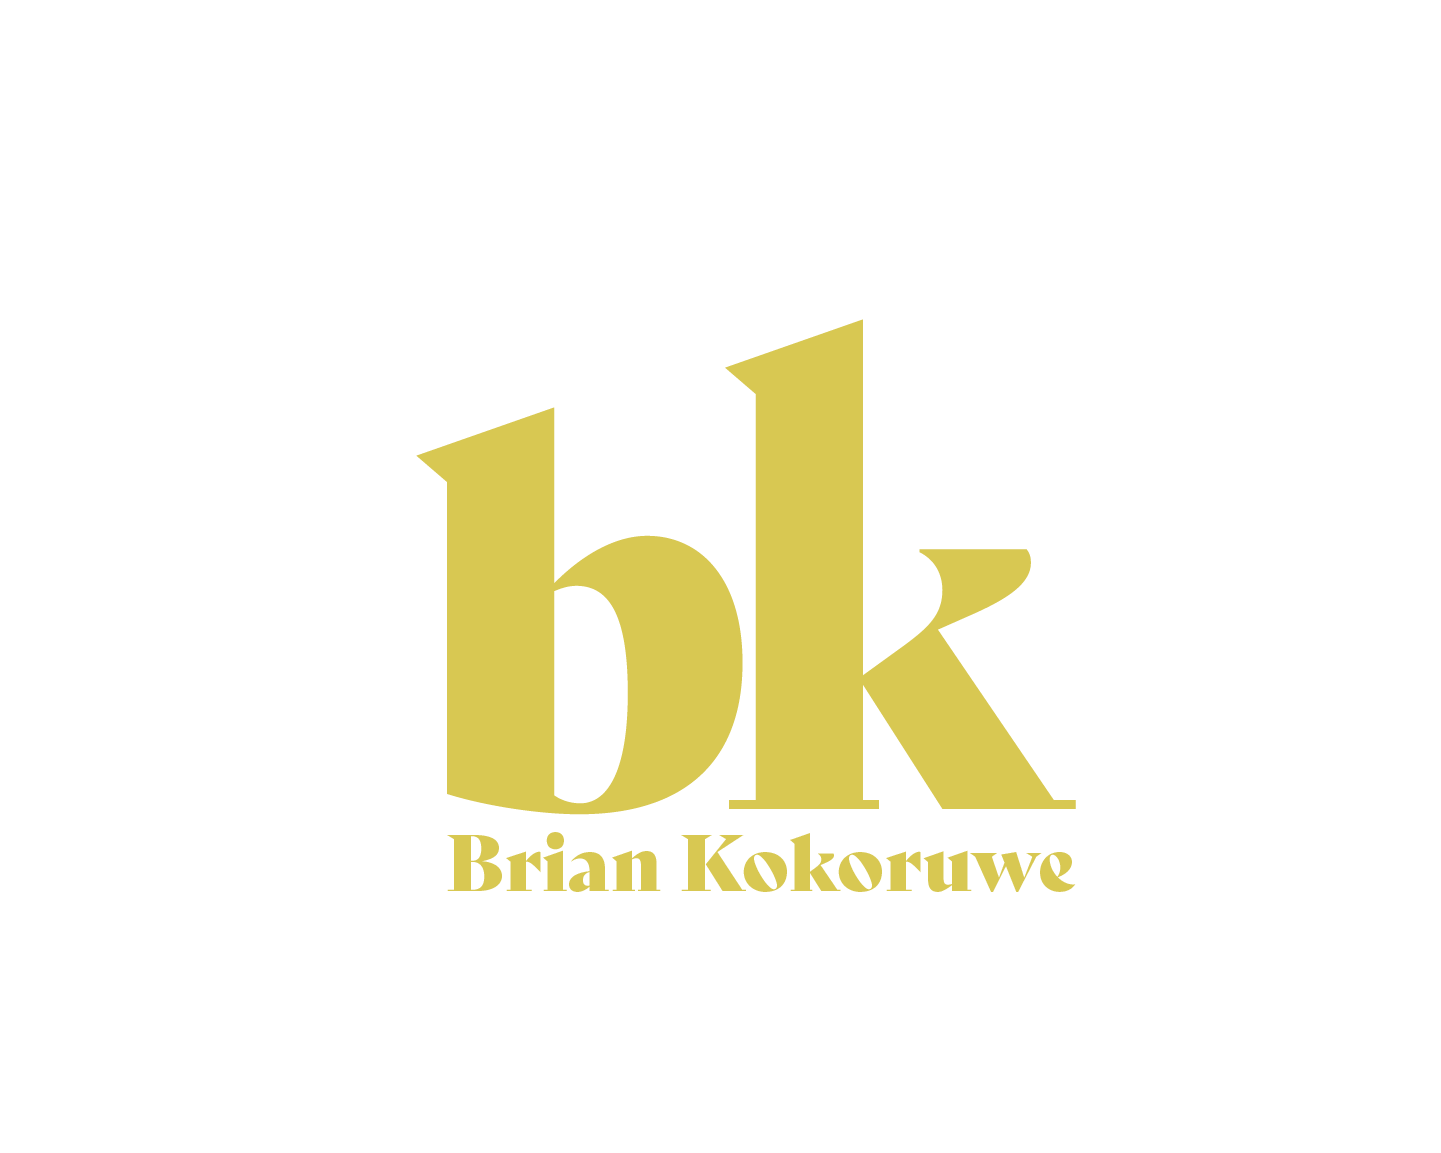 Brian Kokoruwe